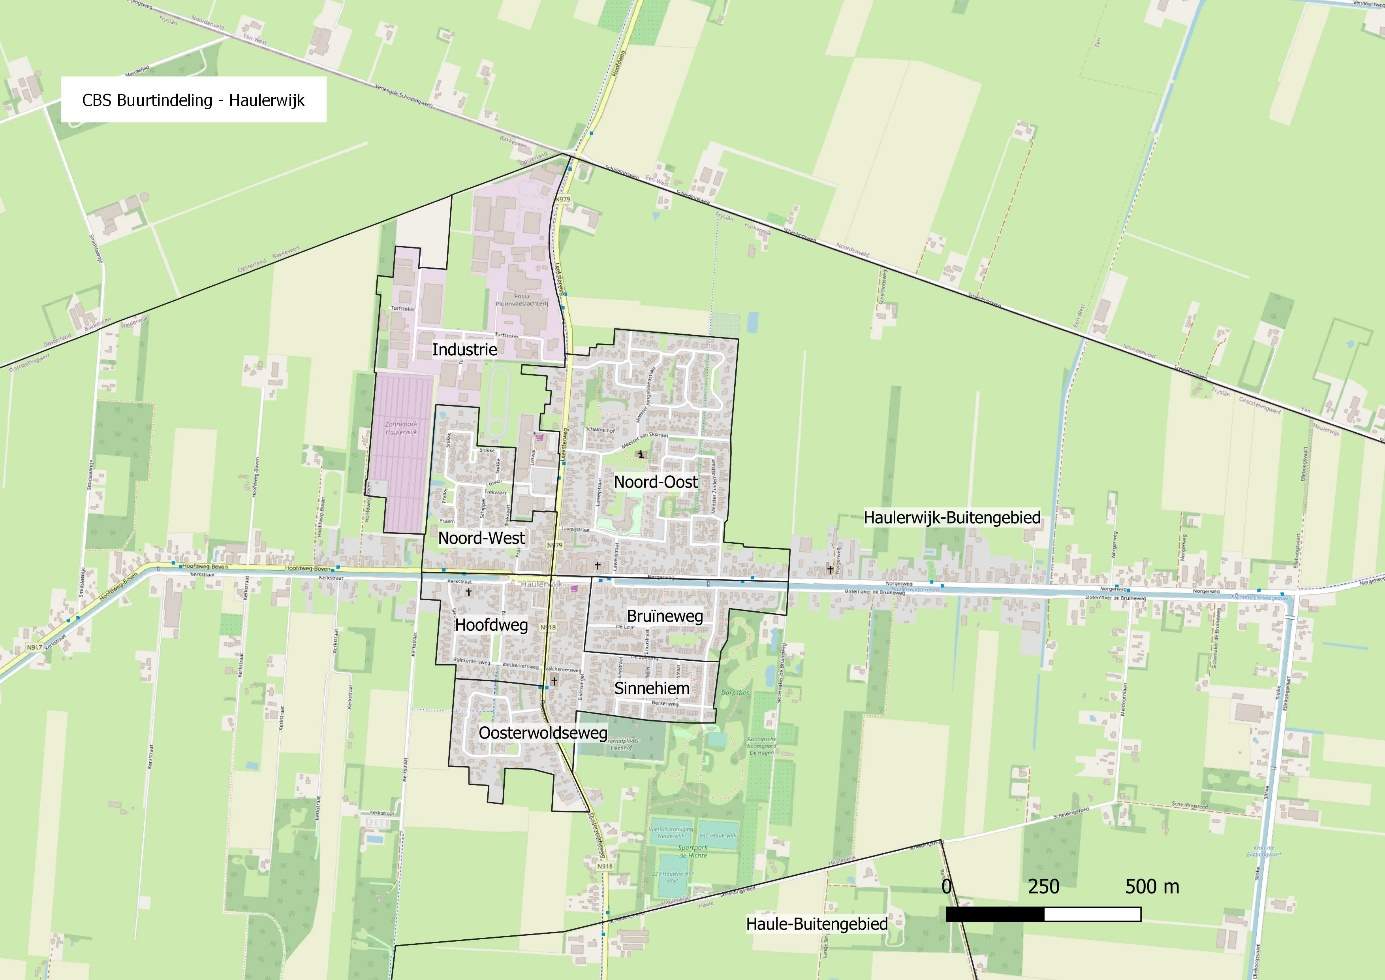 CBS-buurtindeling van Haulerwijk en omgeving.